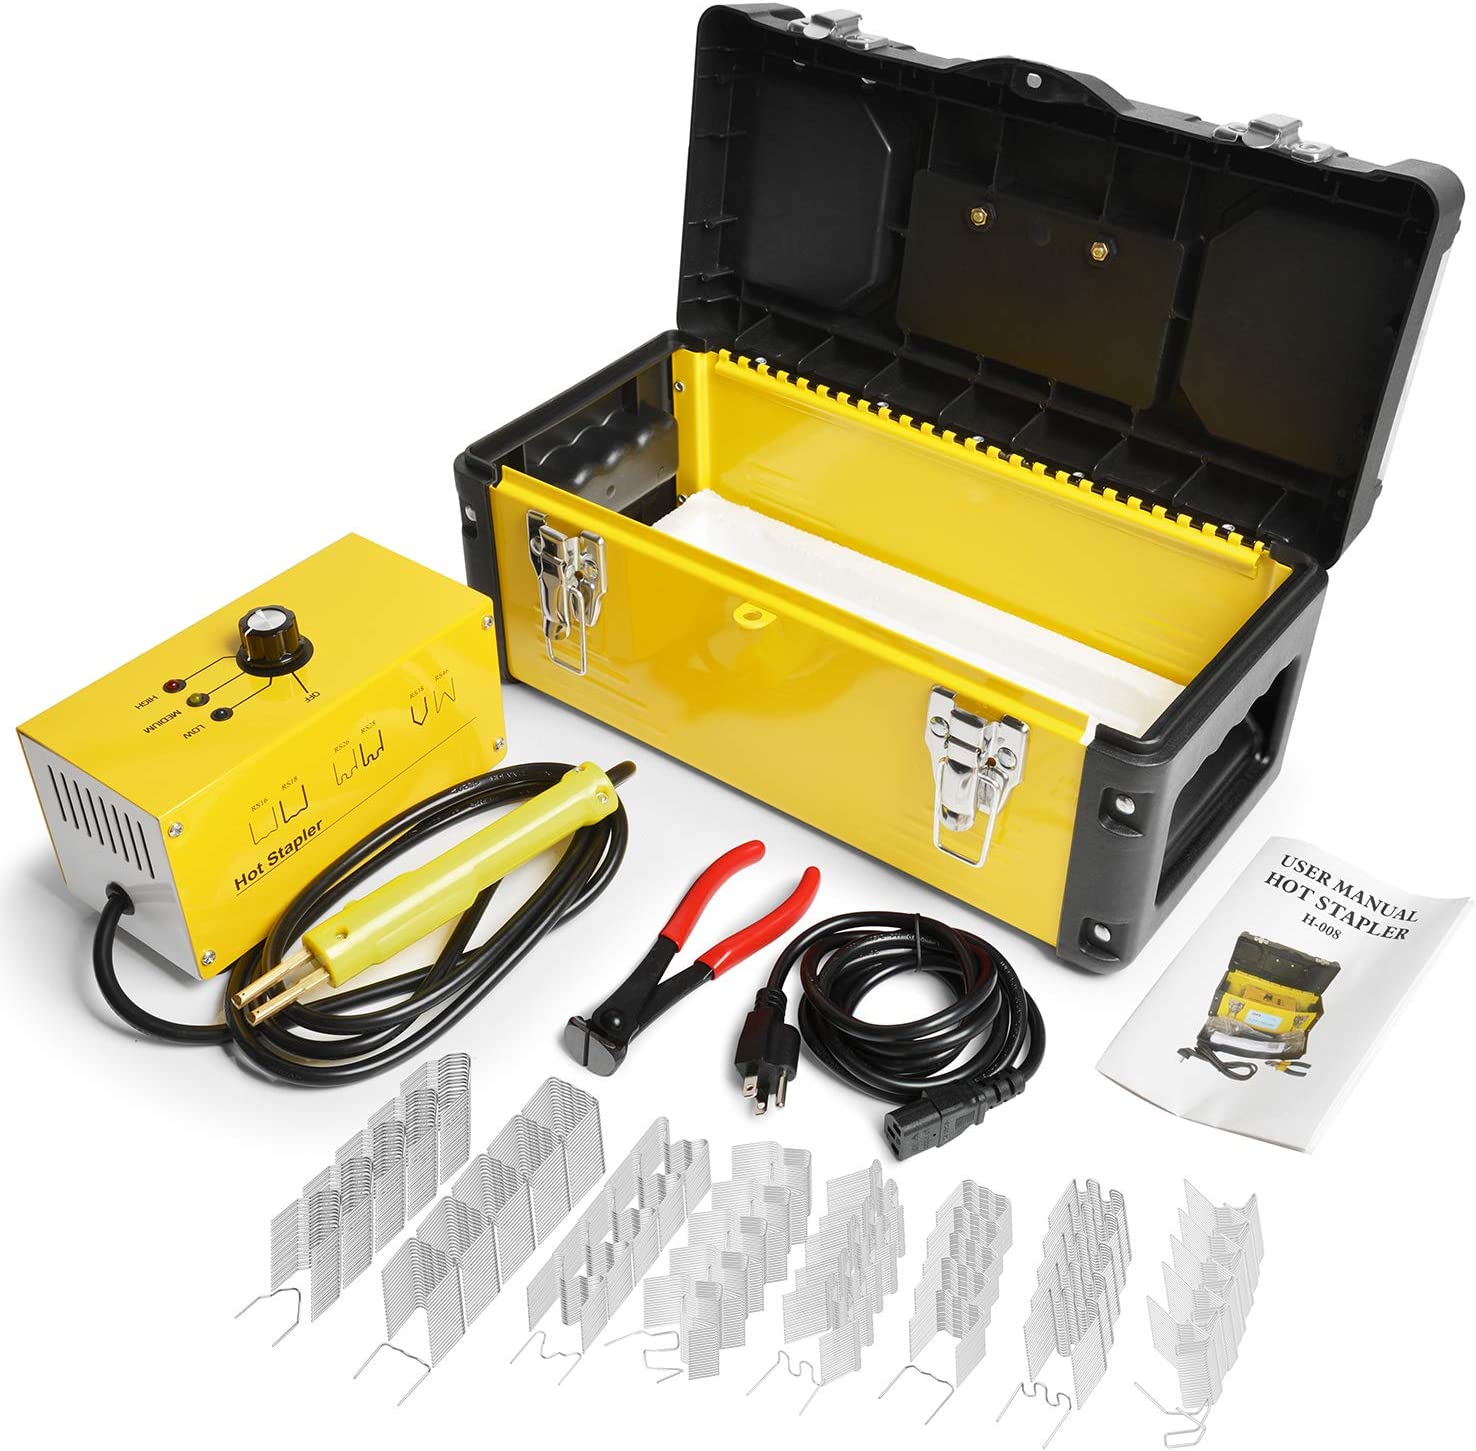 Plastic Welder Hot Stapler Kit with 800PCS Hot Staples, 110V Bumper Crack Repair Welding Machine Set